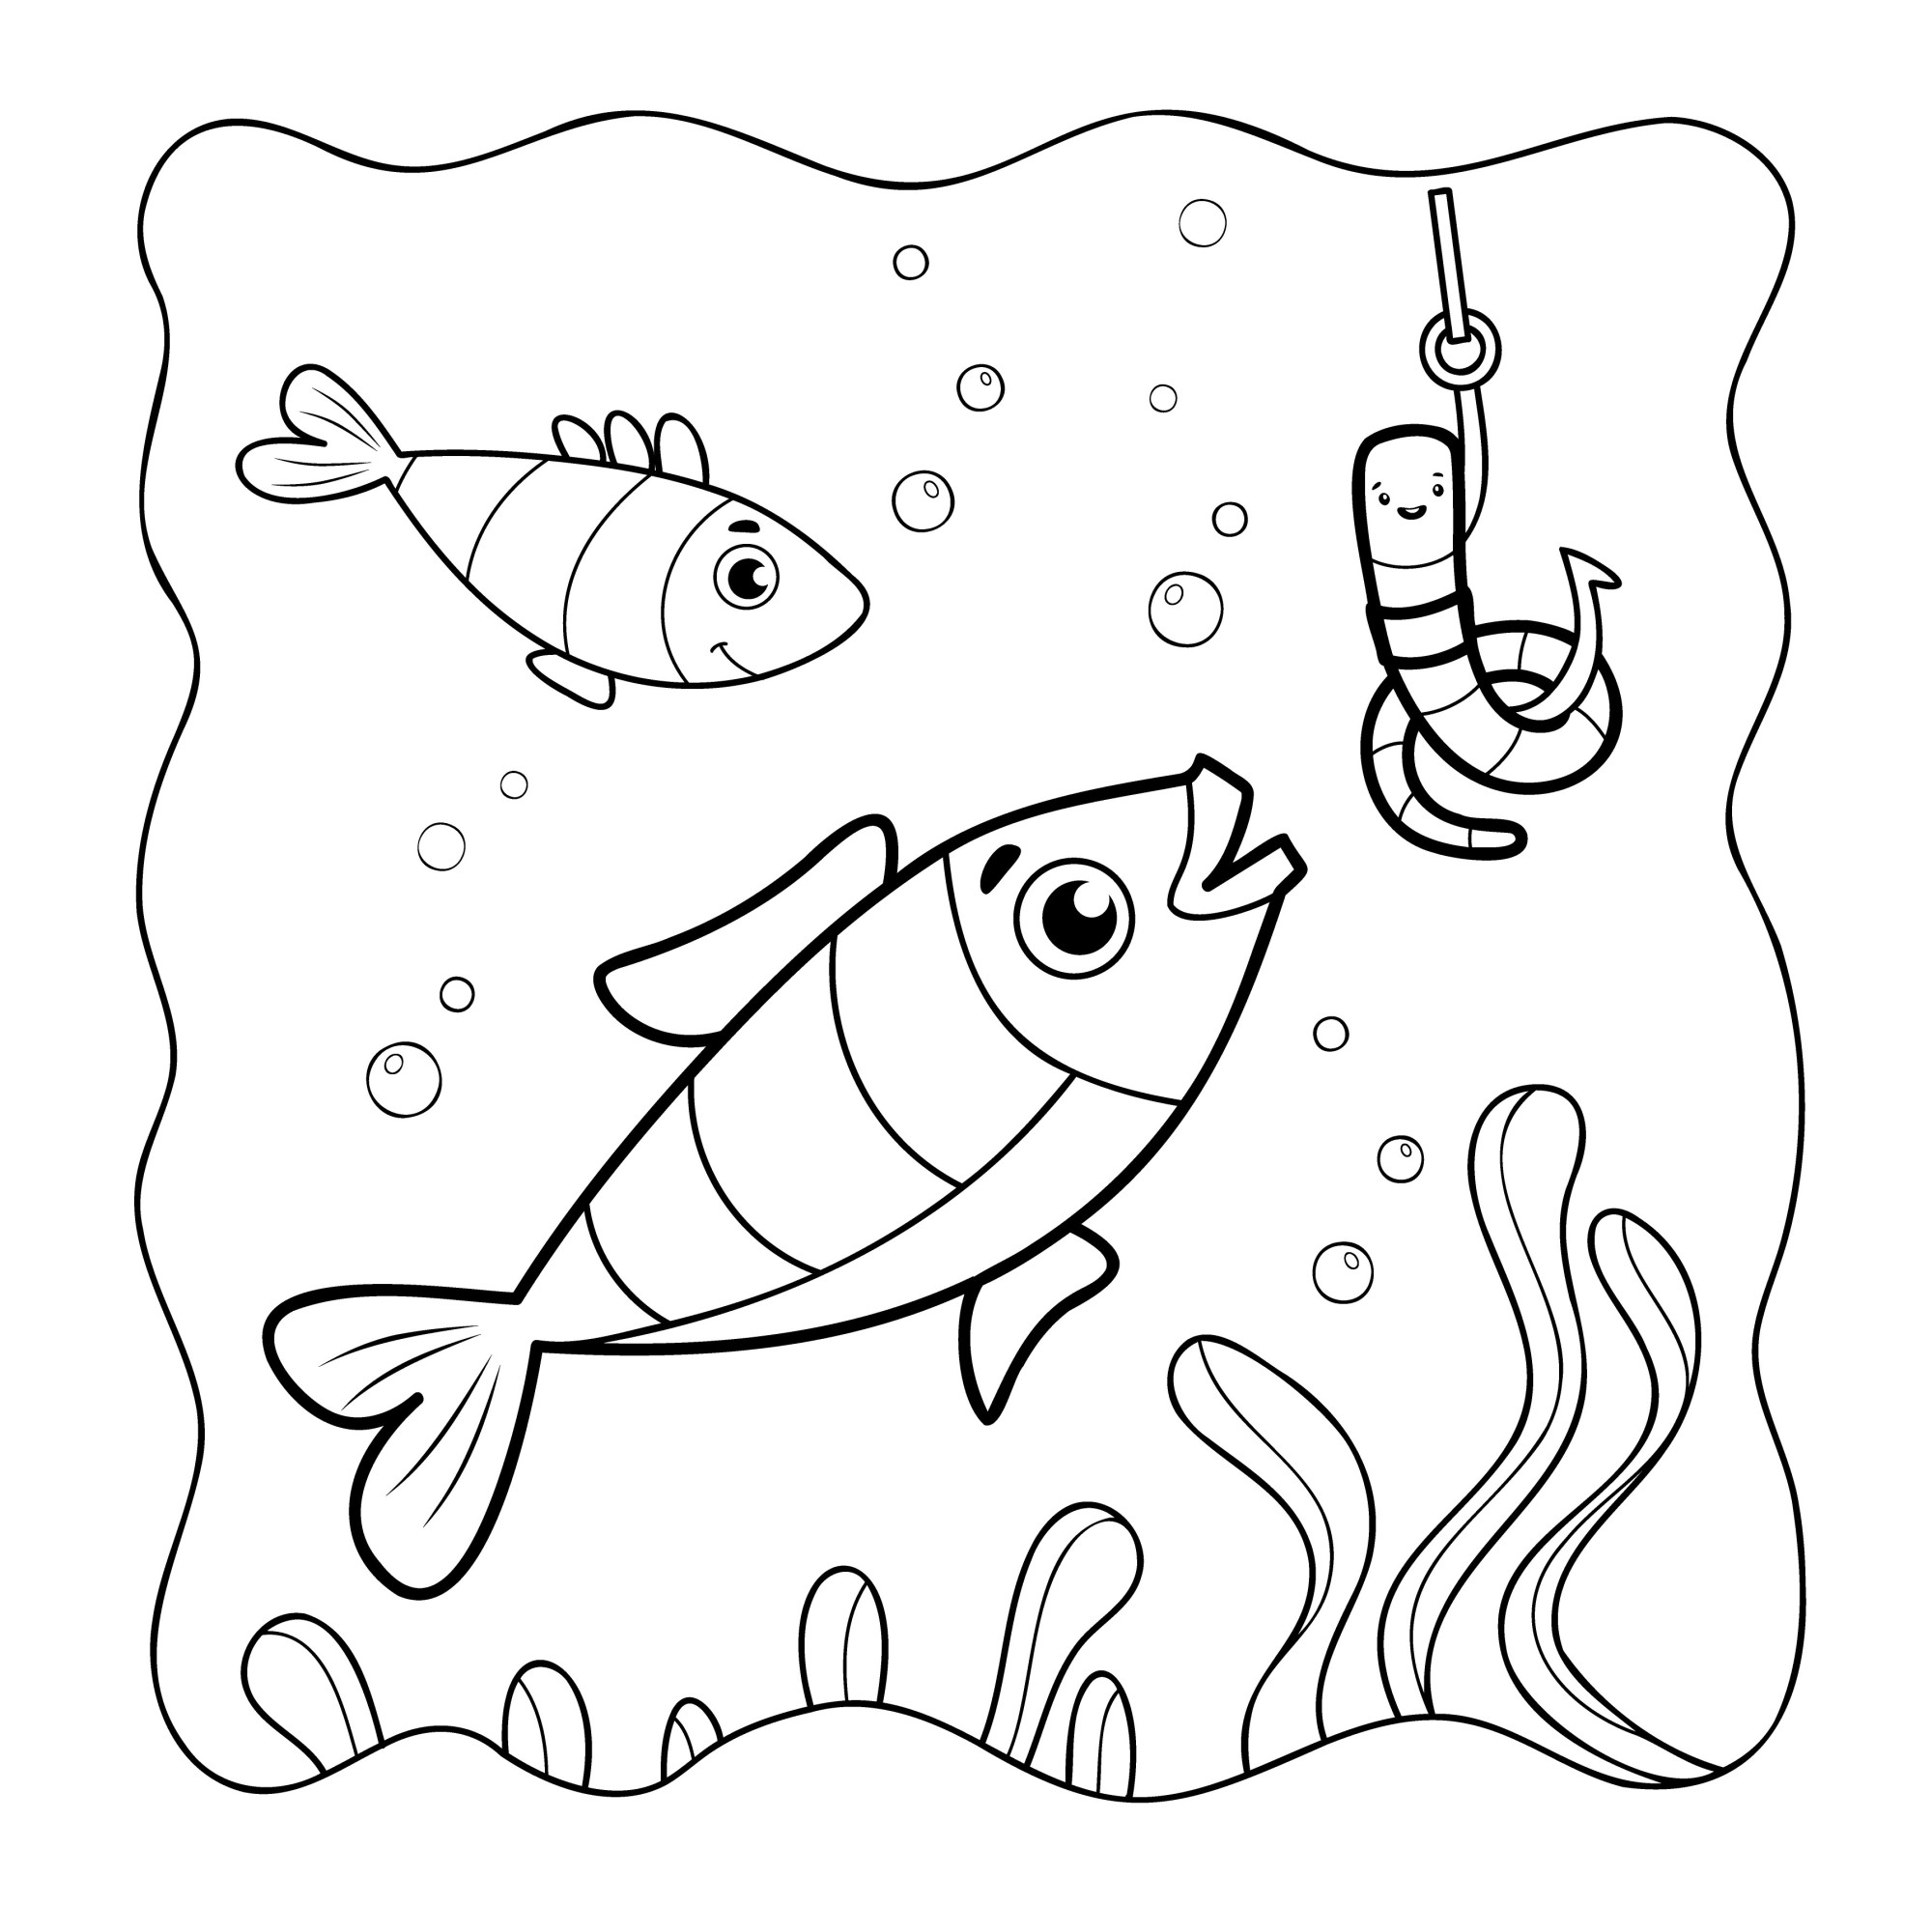 Раскраска для детей: рыбки в озере вокруг крючка с червяком